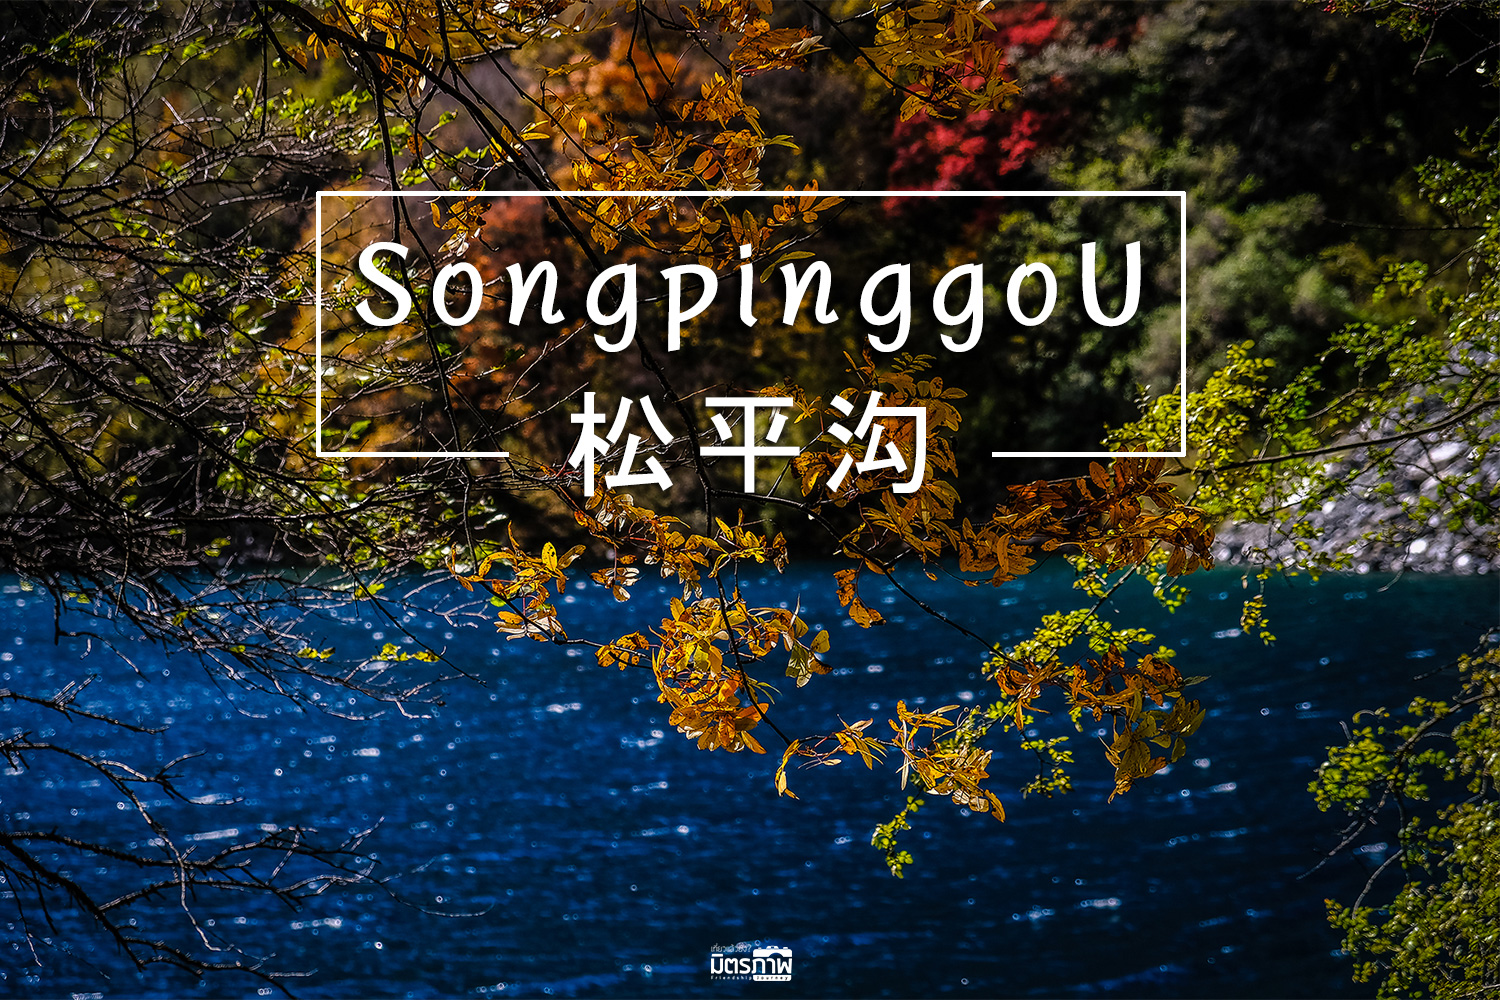 เที่ยวจีน ชมใบไม้เปลี่ยนสี ที่ Songpinggou